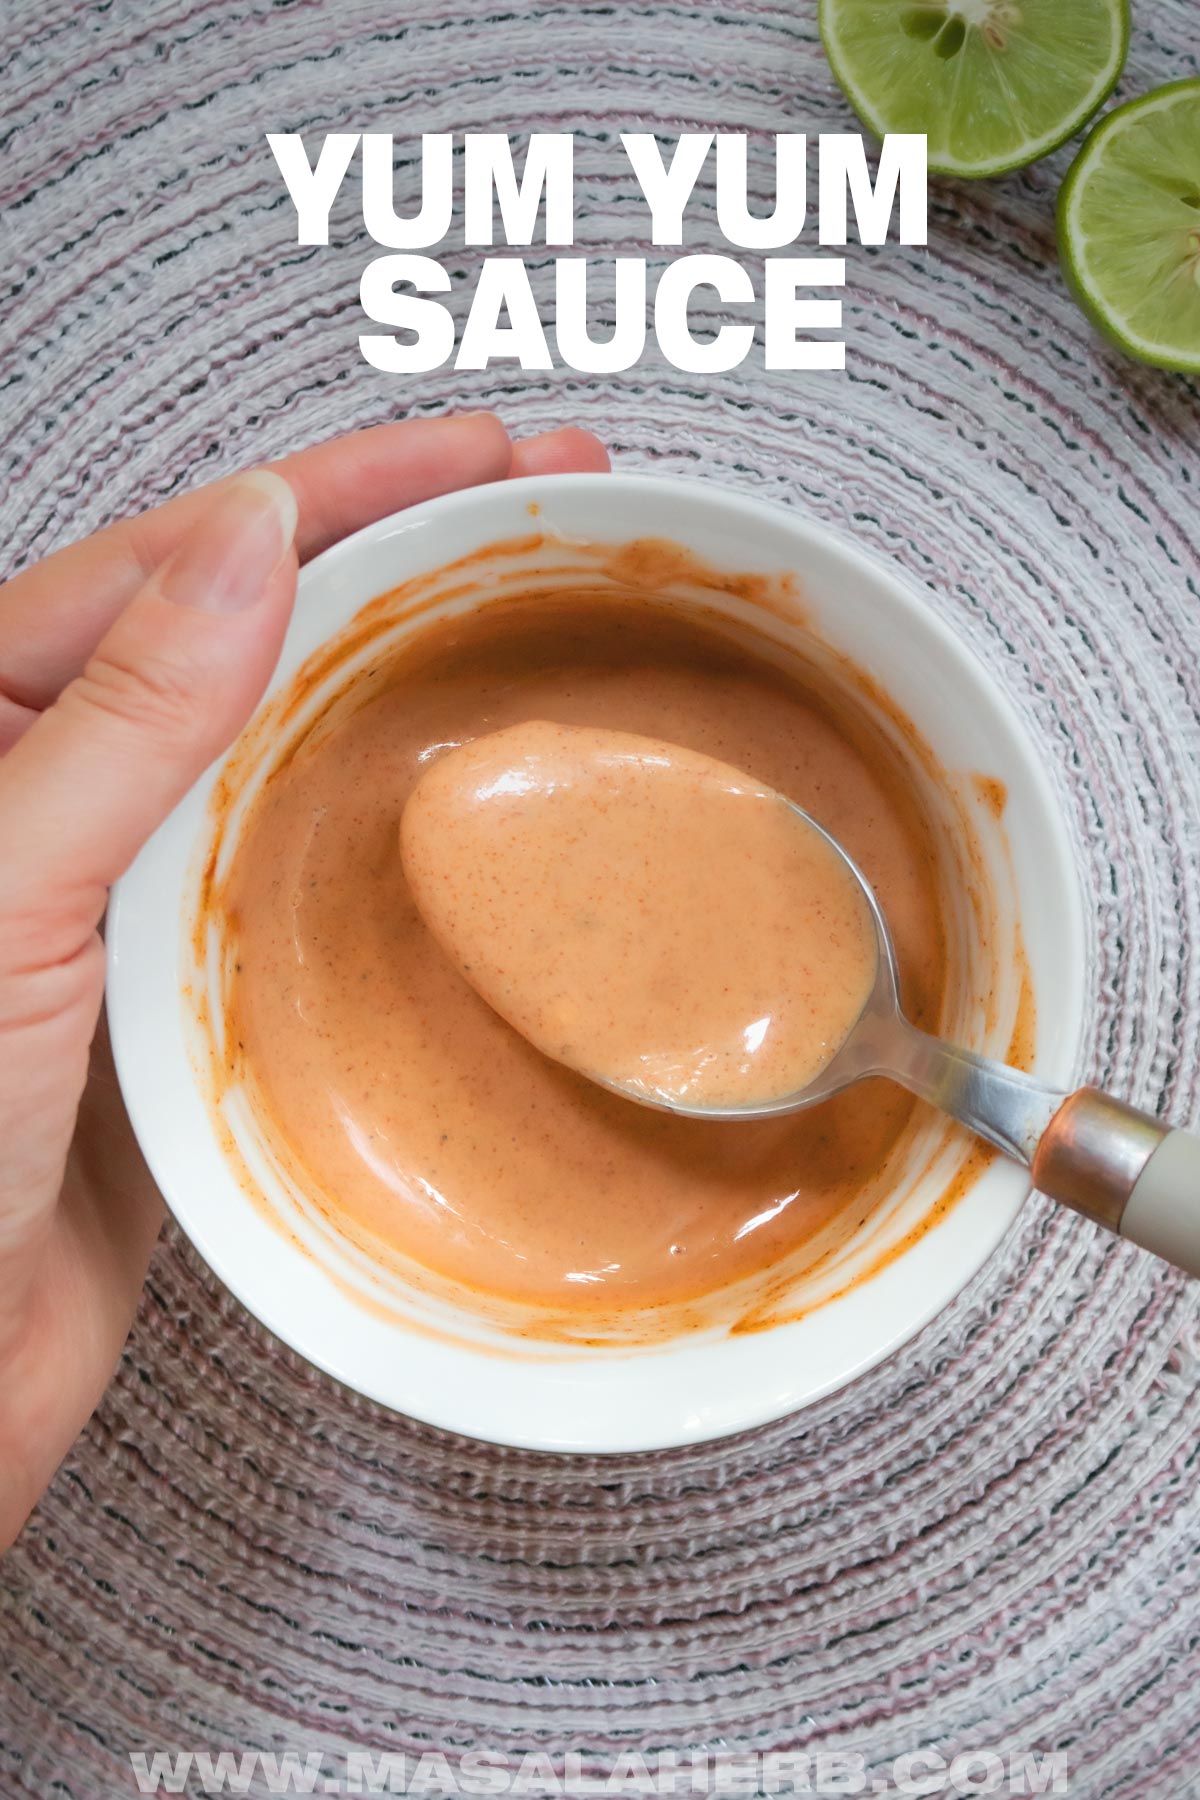 Yum Yum Sauce Recipe pin image